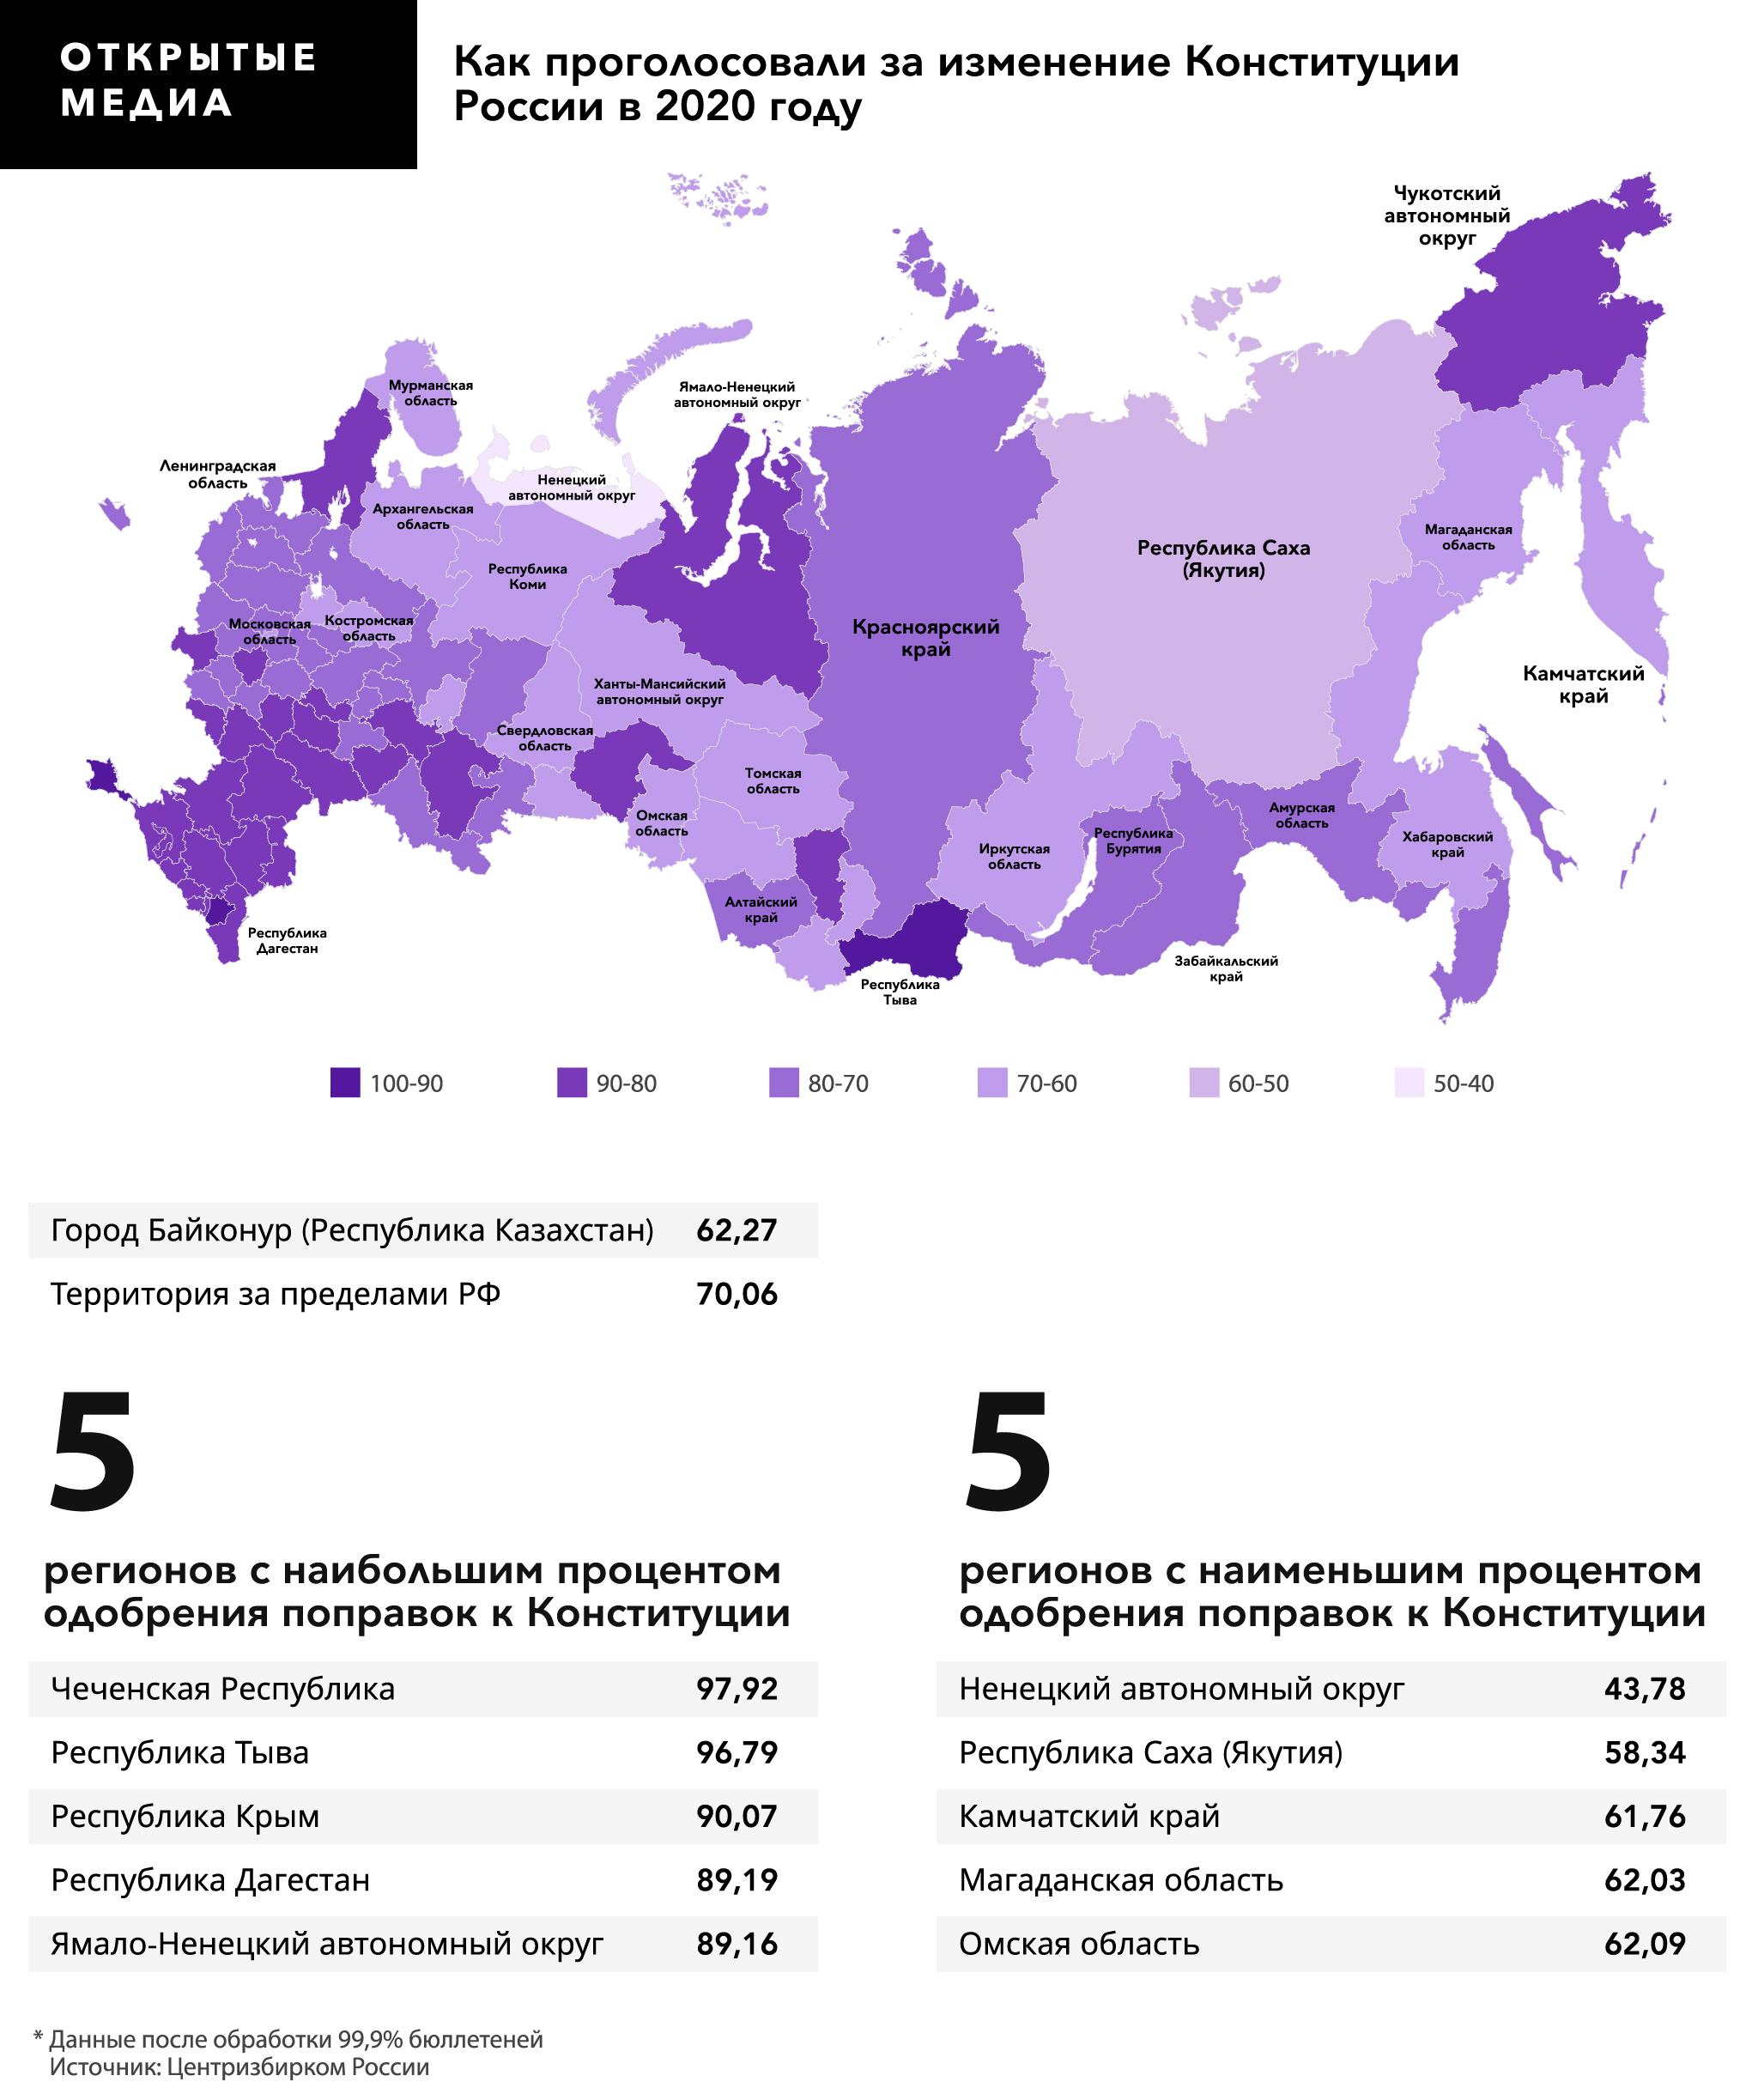 Где больше всего проголосовали. Ujkjcjdfybt GJ htubjufv]. Статистика голосования по регионам. Голосование по регионамонам. Голосование за Путина по регионам.